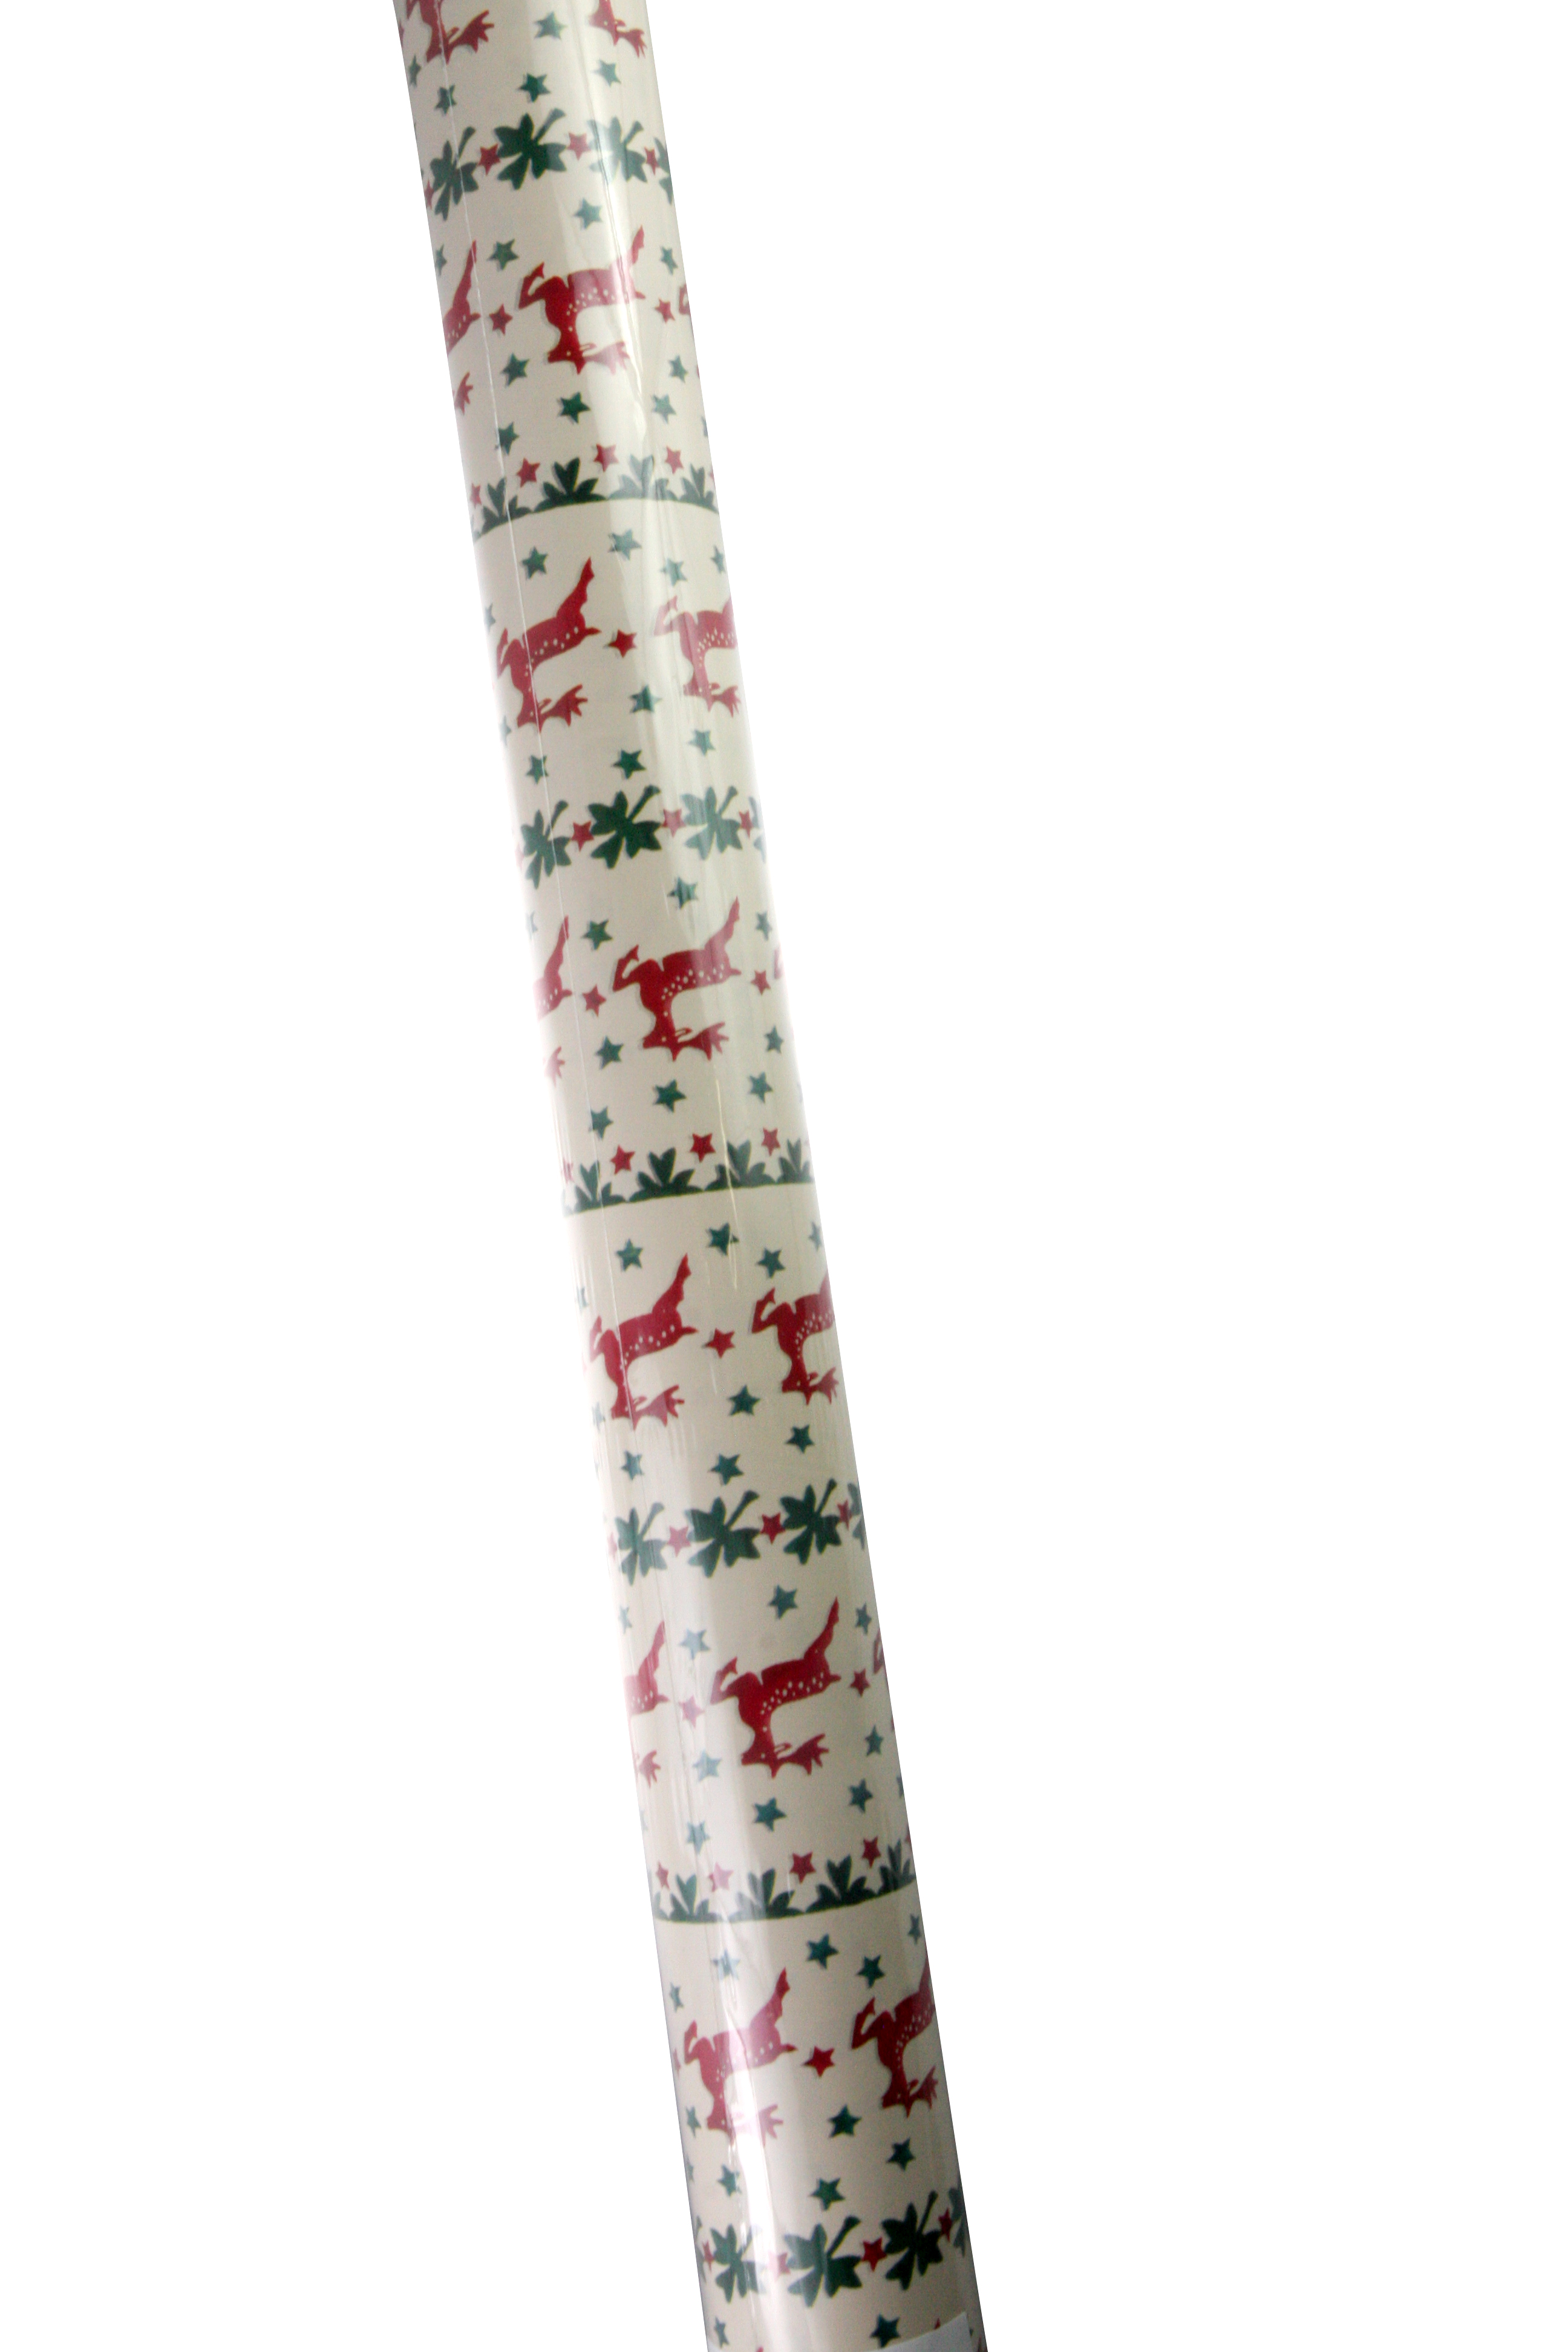 Hartie de impachetat - Emma Bridgewater Reindeer Stripe Roll Wrap | Swan Mill Paper